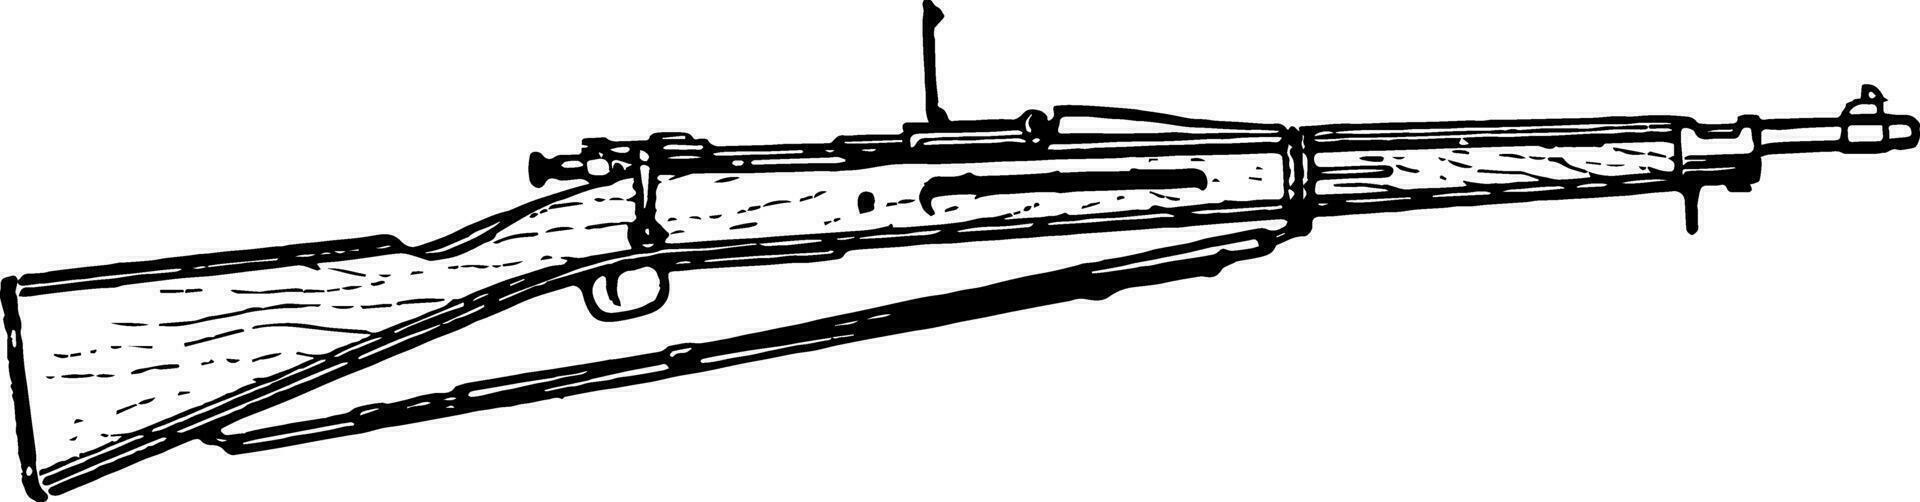 Springfield m1903 rifle, Clásico ilustración. vector